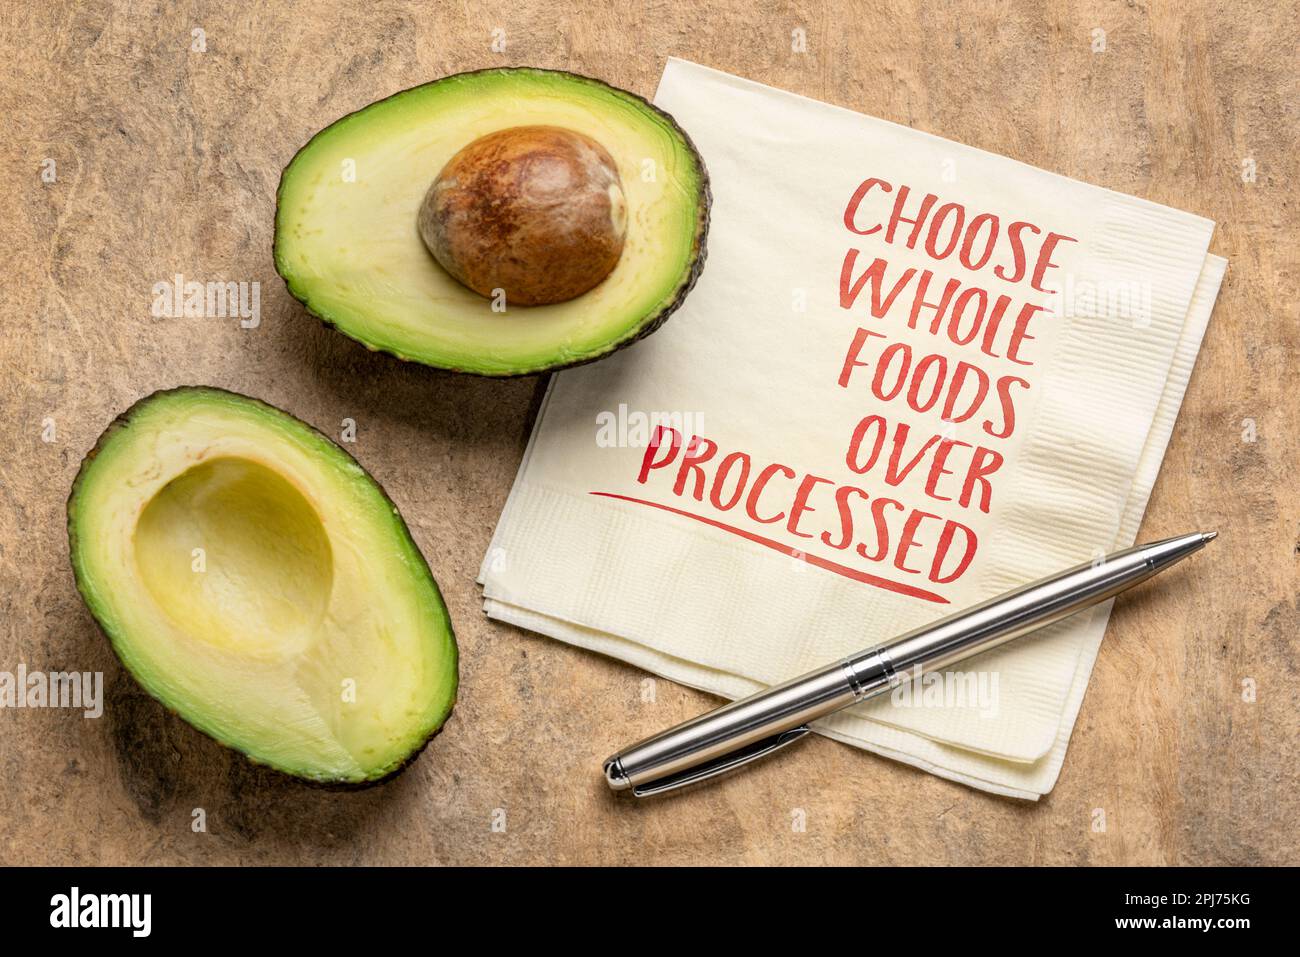 Entscheiden Sie sich für ganze Lebensmittel über verarbeitete - gesundes Ernährungs- und Lifestyle-Konzept, Erinnerungsworte handgeschrieben auf einer Serviette mit geschnittenen Avocadofrüchten Stockfoto